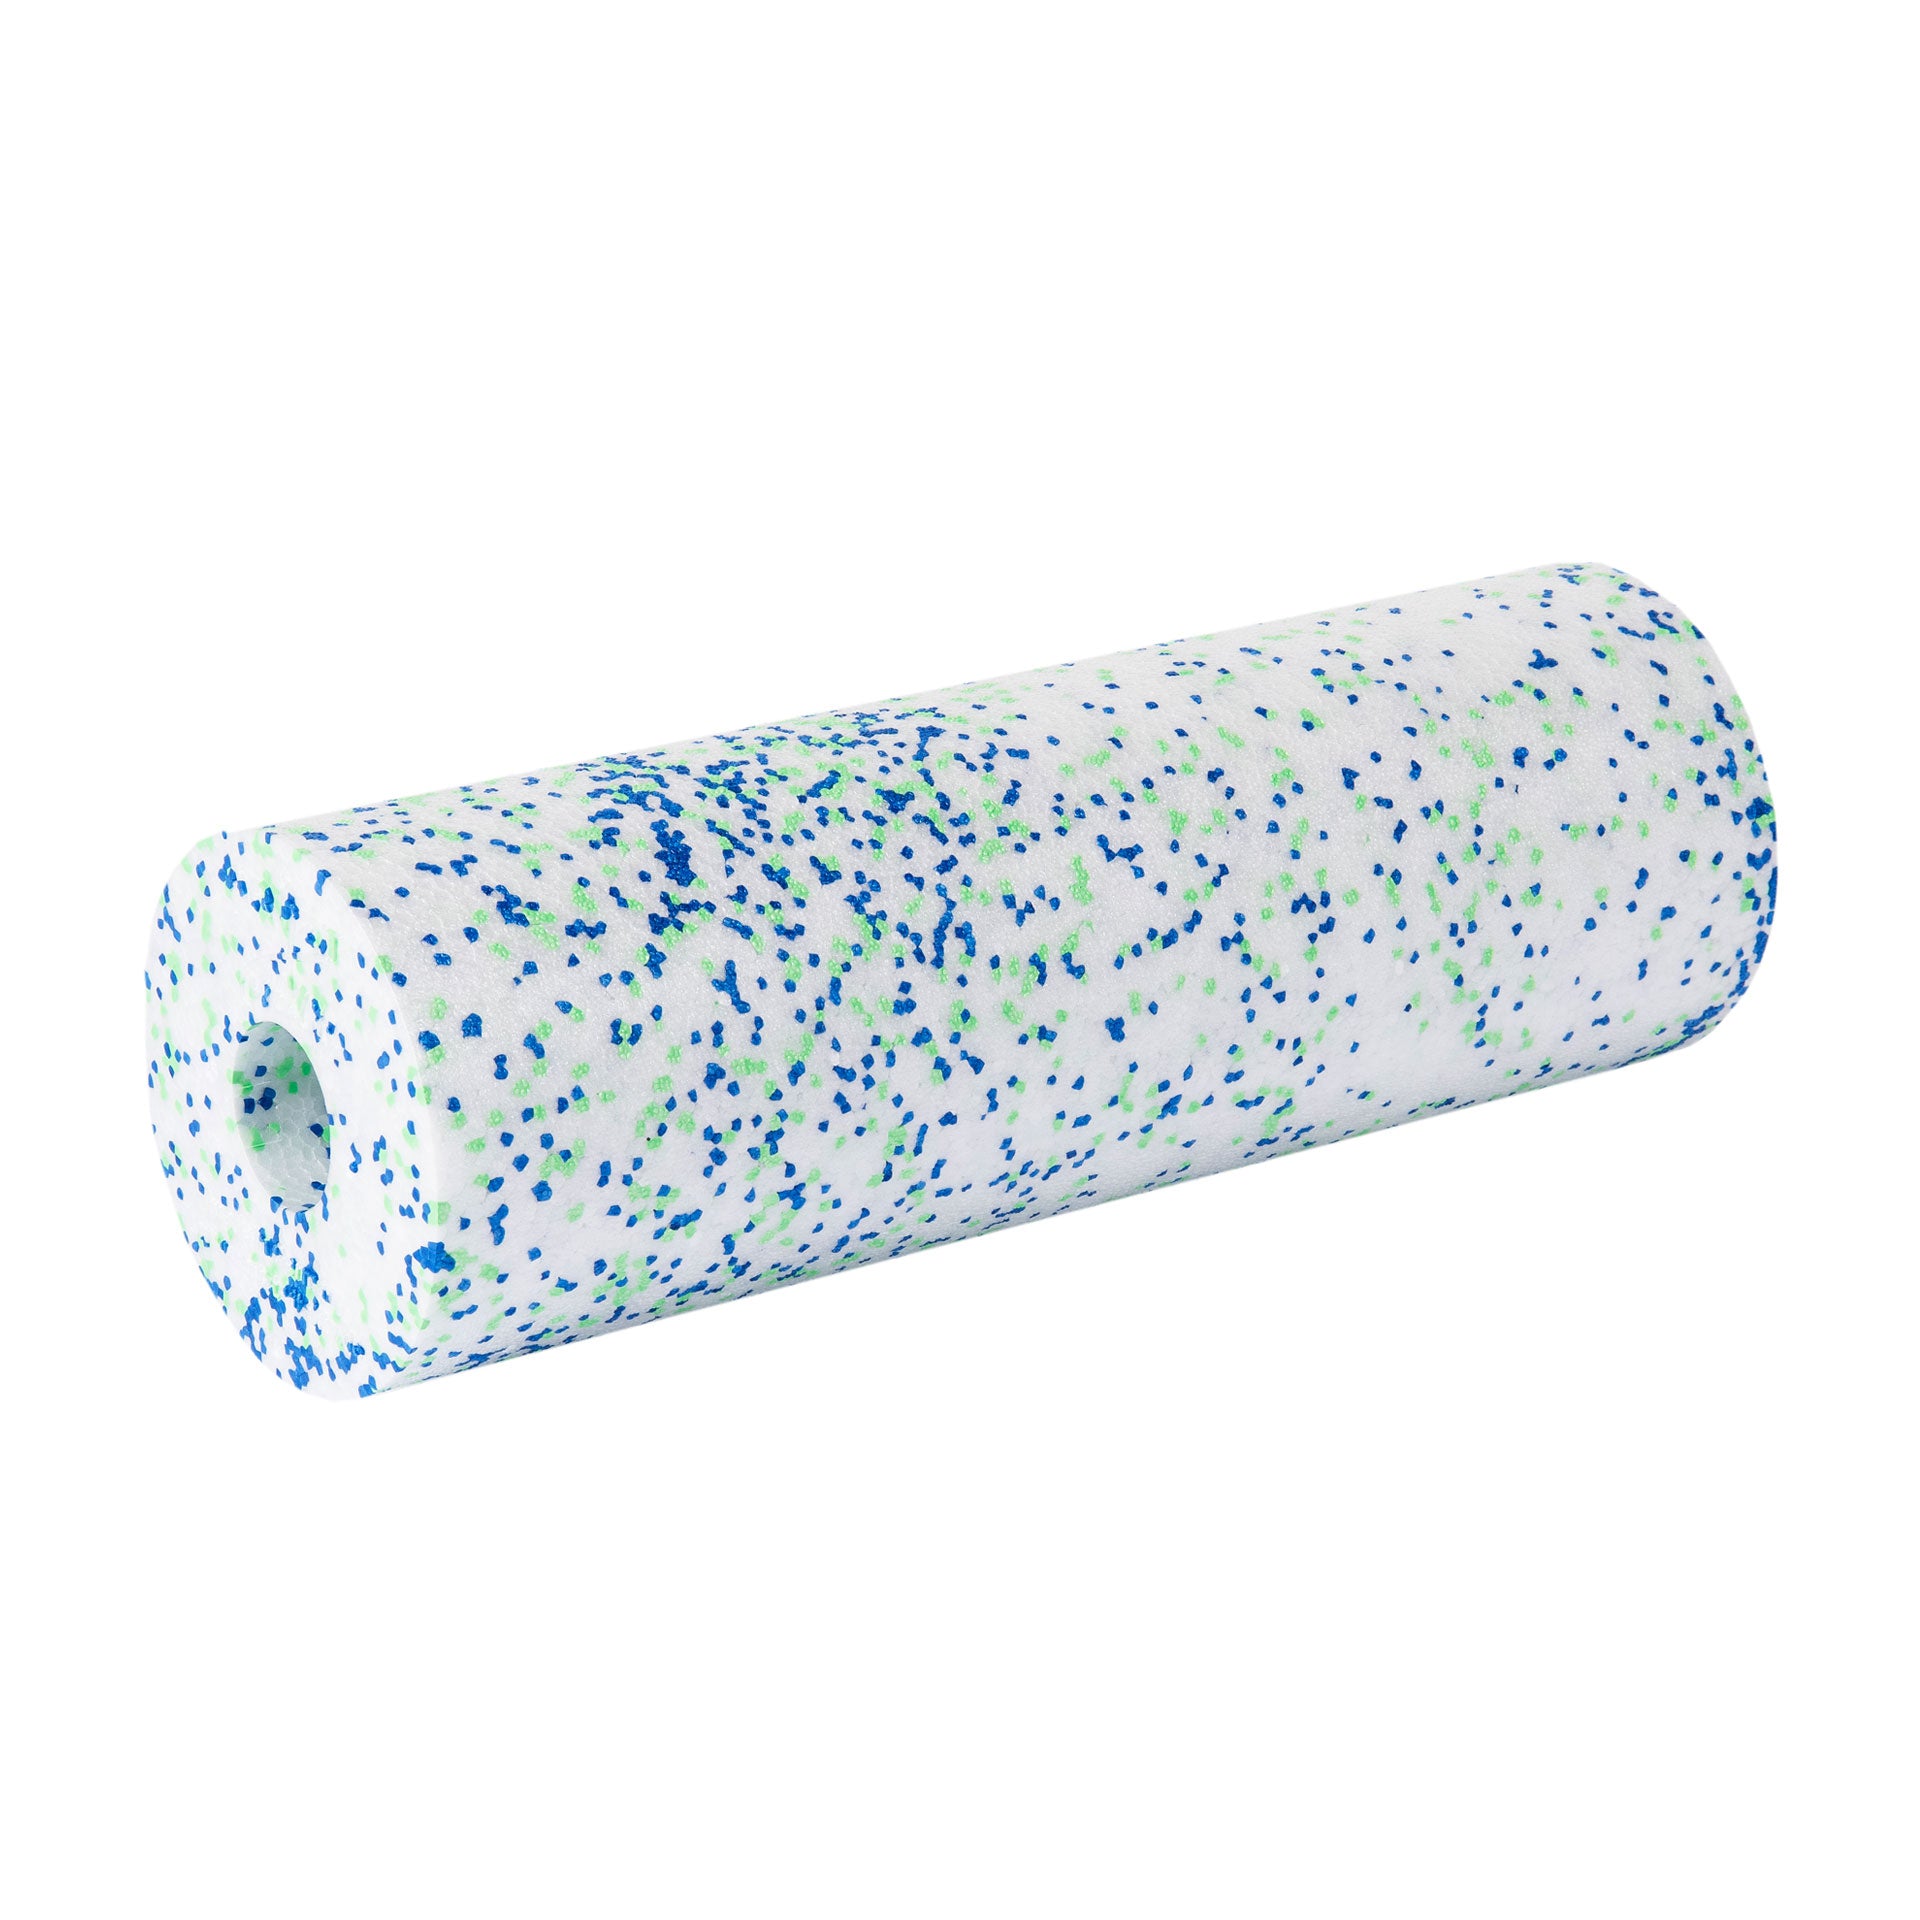 Buy BLACKROLL foam rolls online